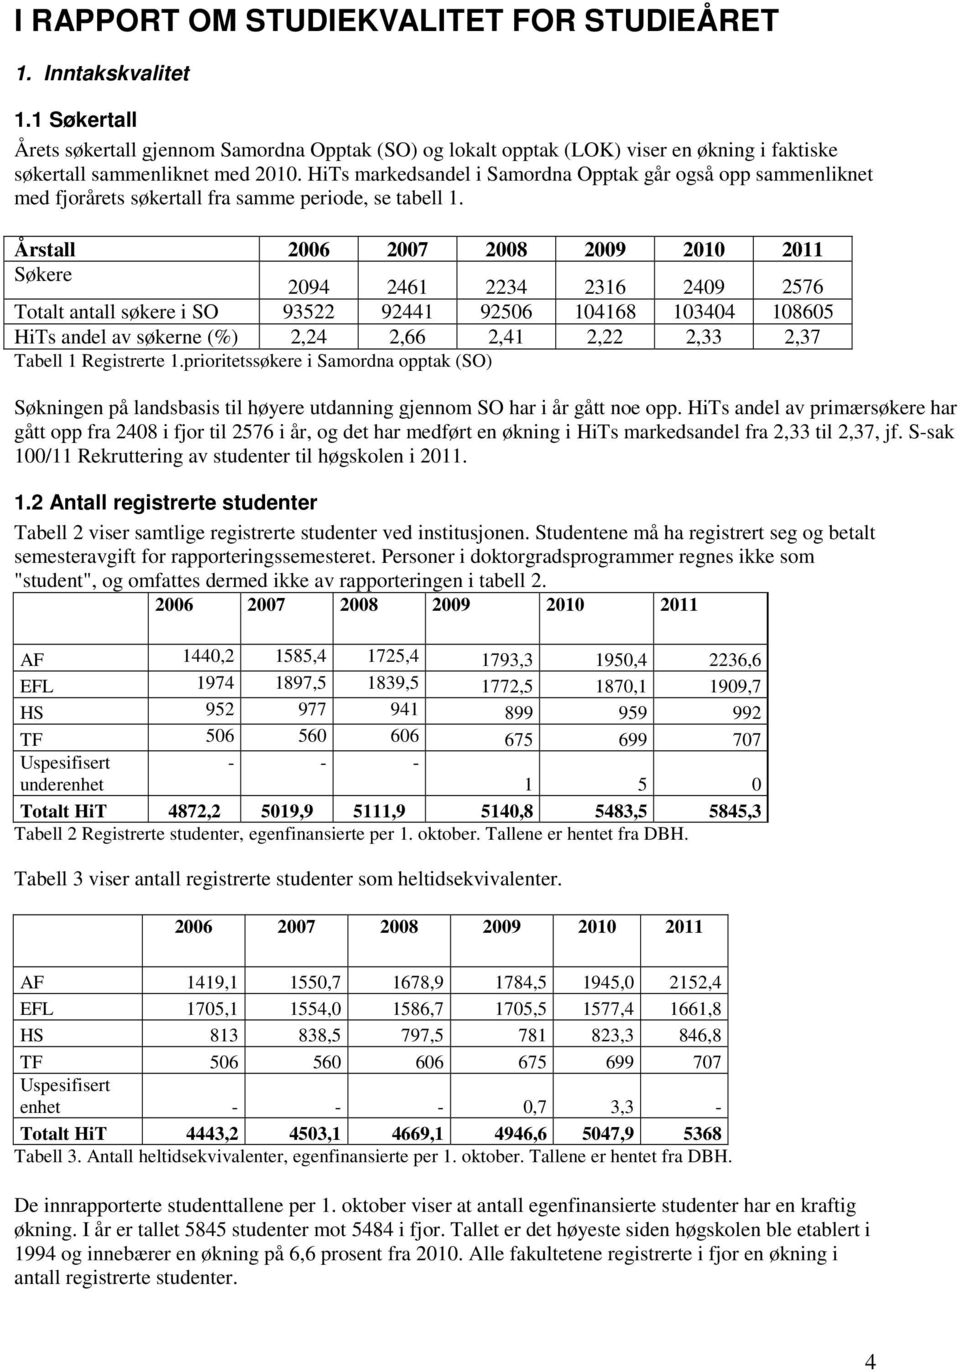 HiTs markedsandel i Samordna Opptak går også opp sammenliknet med fjorårets søkertall fra samme periode, se tabell 1.